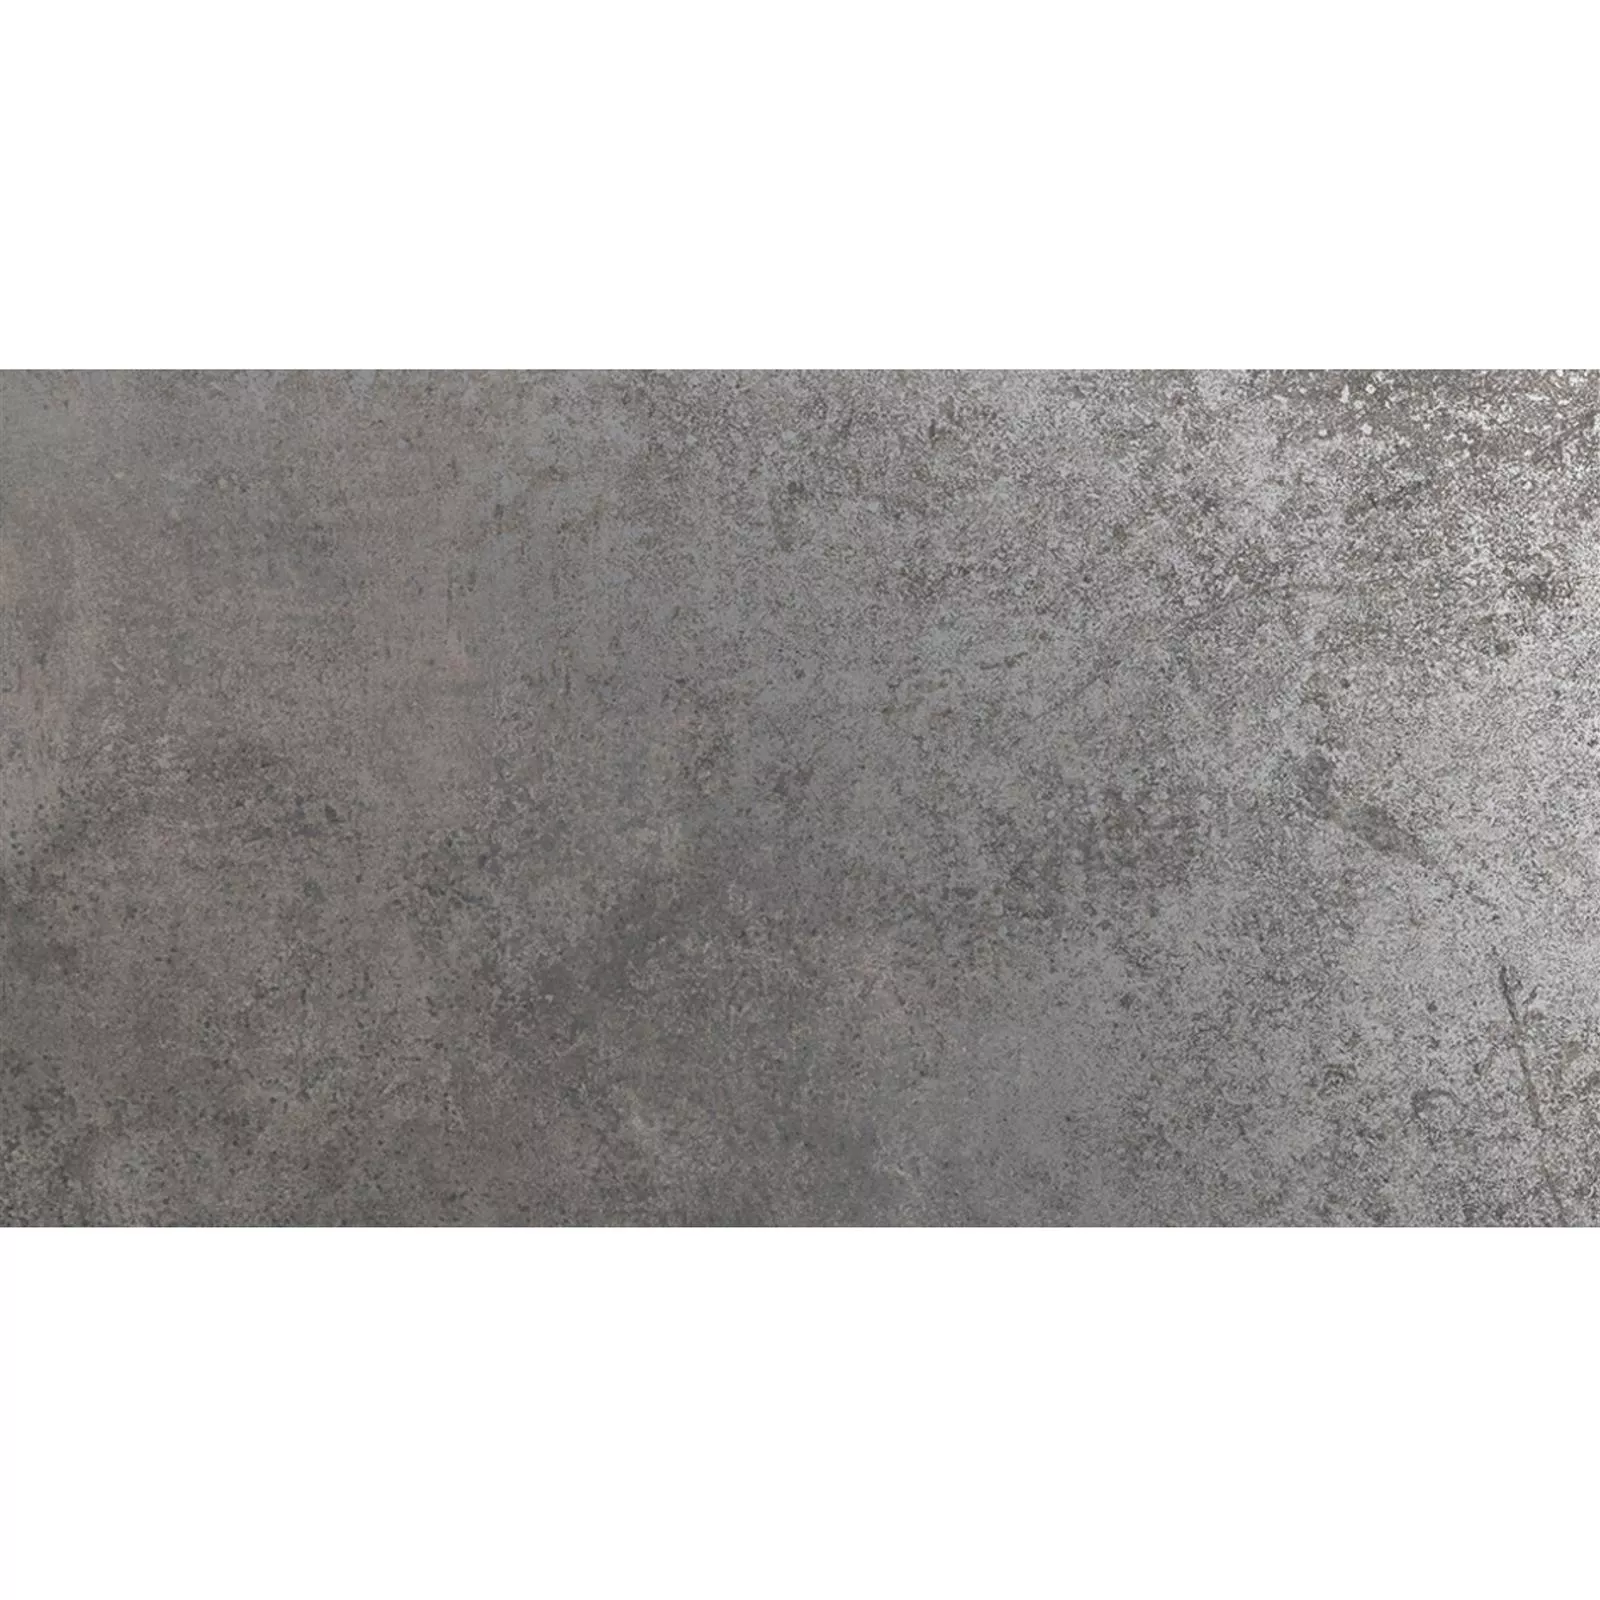 Muster Bodenfliesen Marathon Metalloptik Silber R10/B 30x60cm